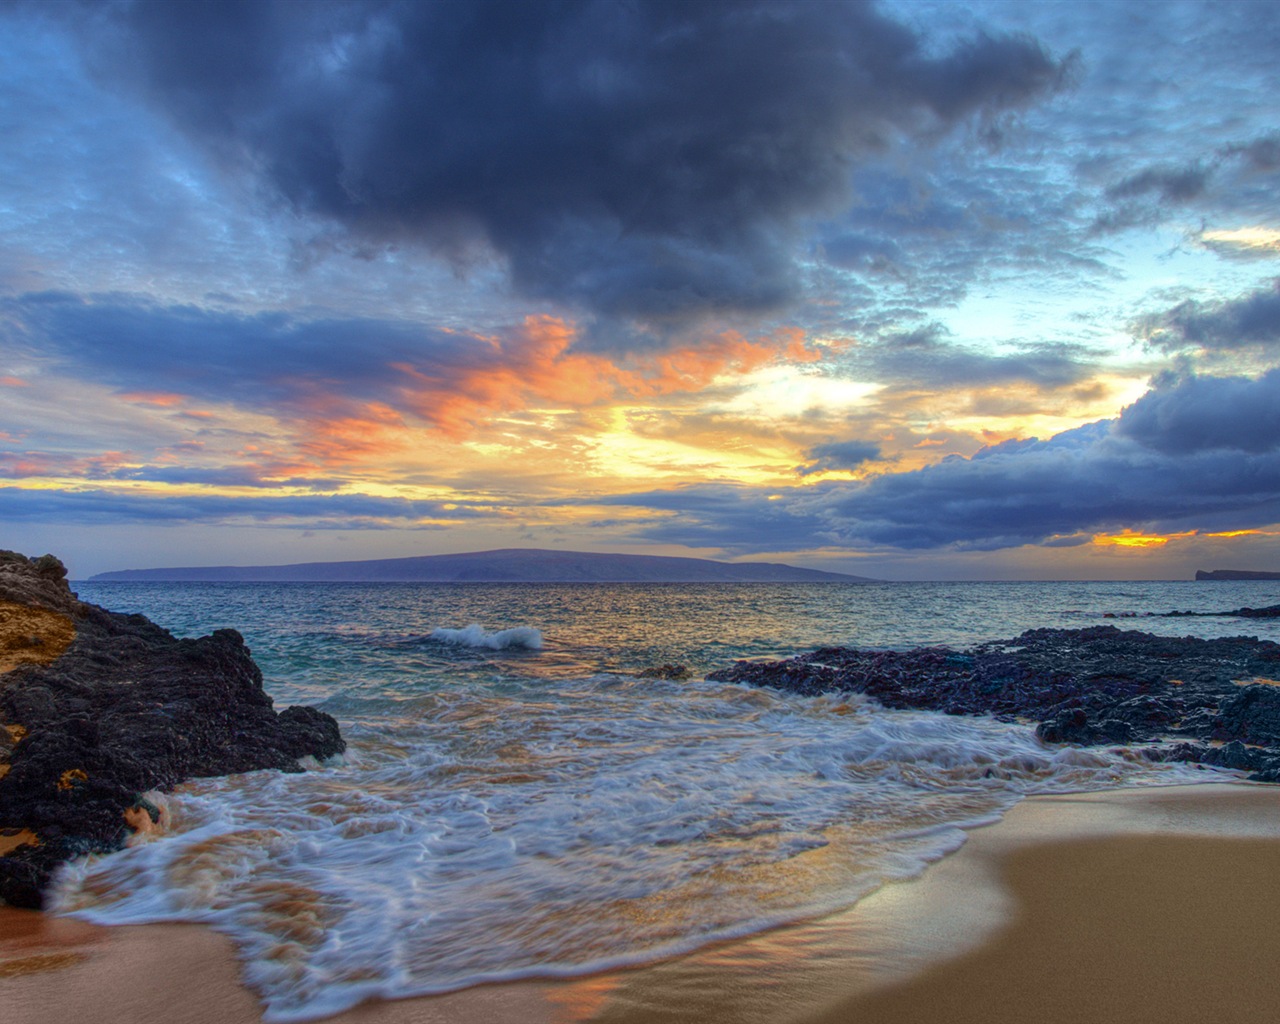 Windows 8 tema de fondo de pantalla: Beach amanecer y el atardecer vistas #9 - 1280x1024